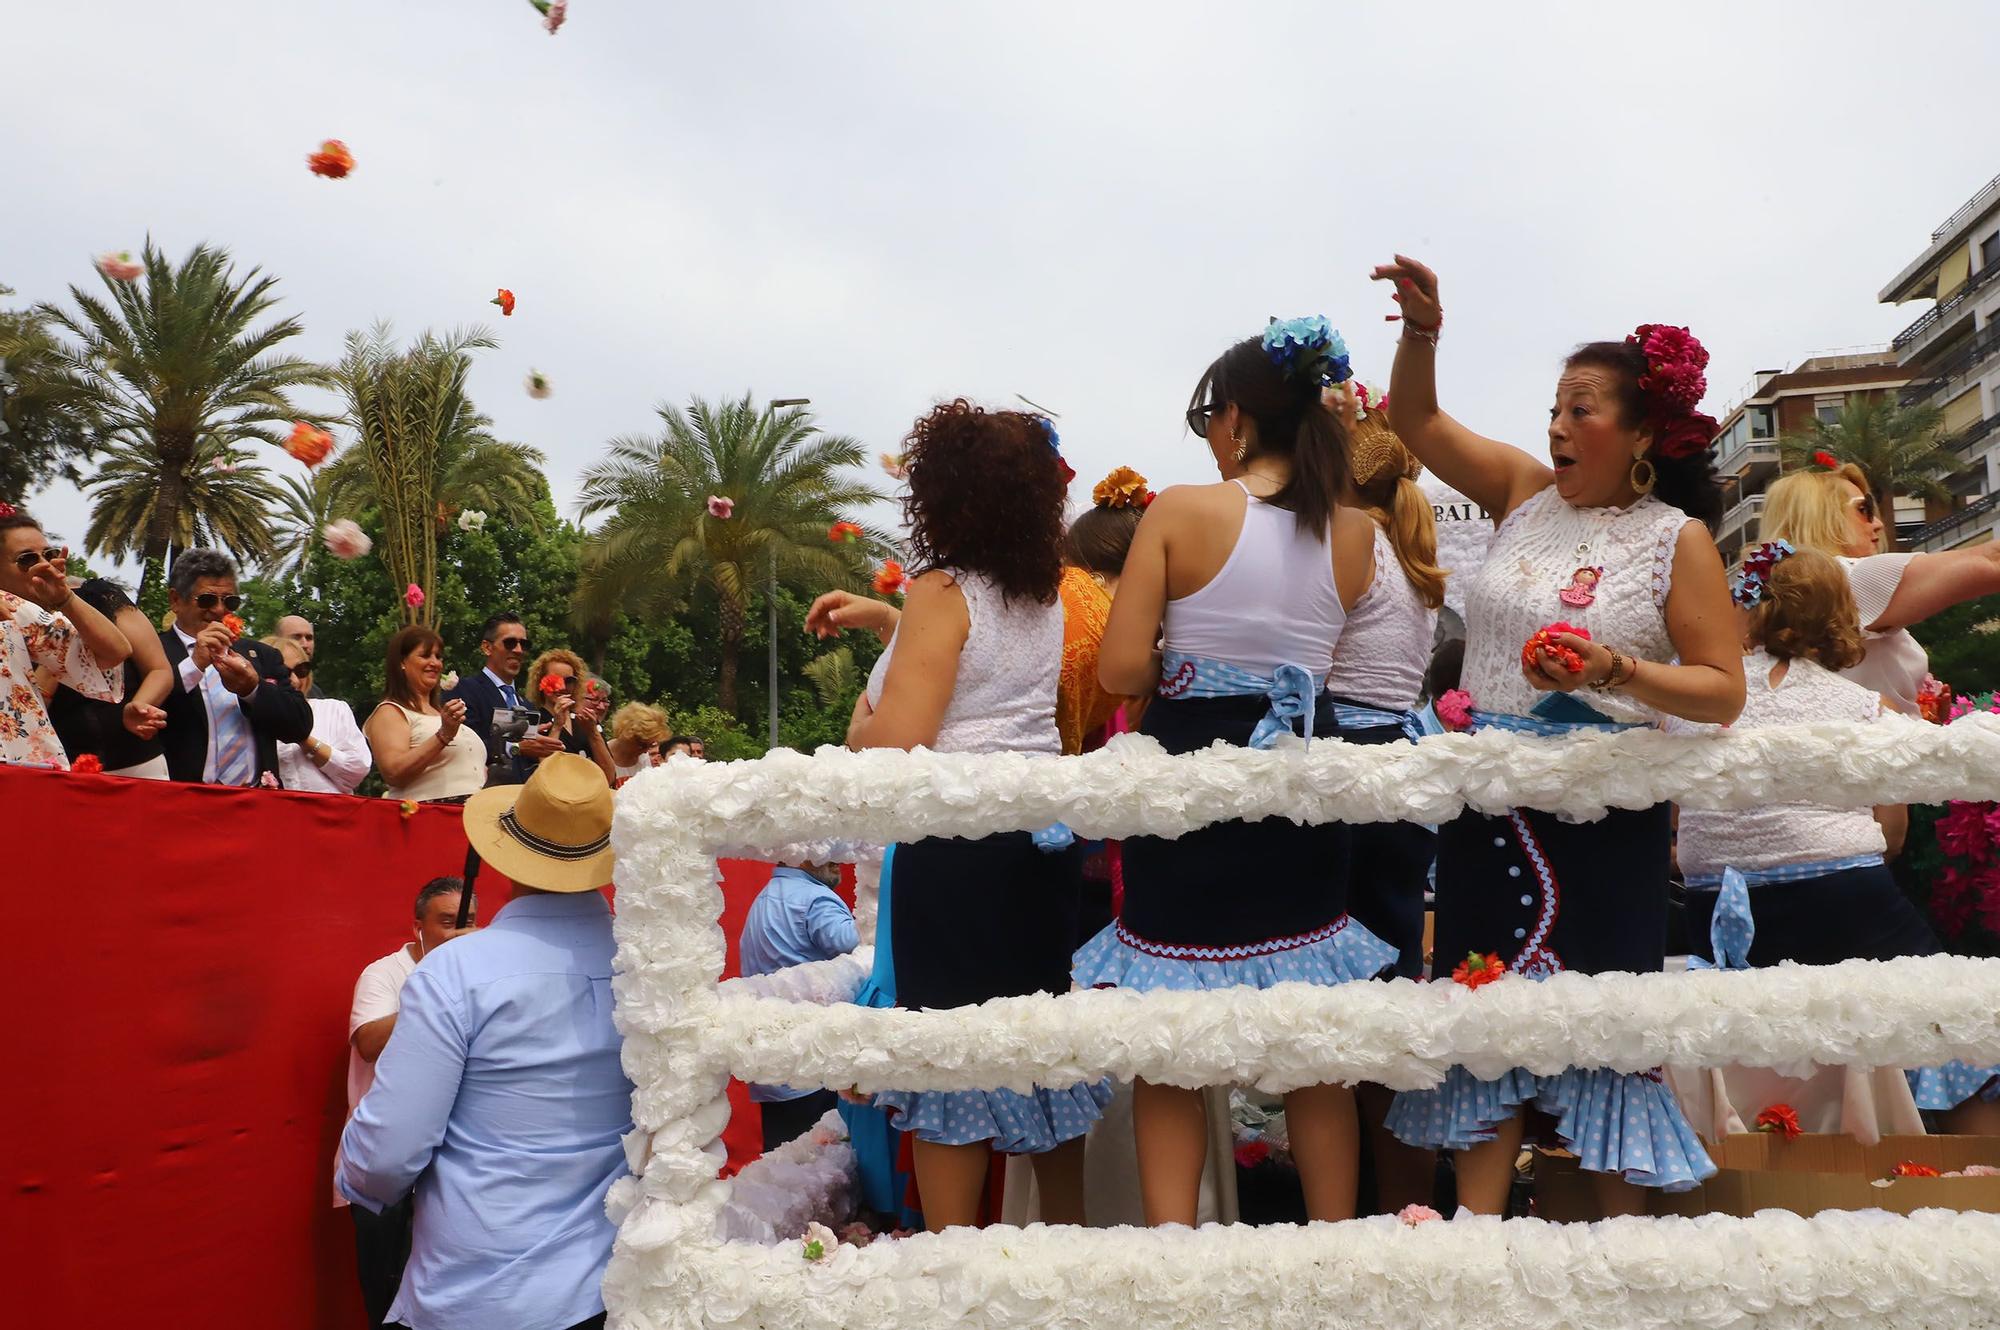 La Batalla de las Flores abre el Mayo festivo en Córdoba con 90.000 claveles